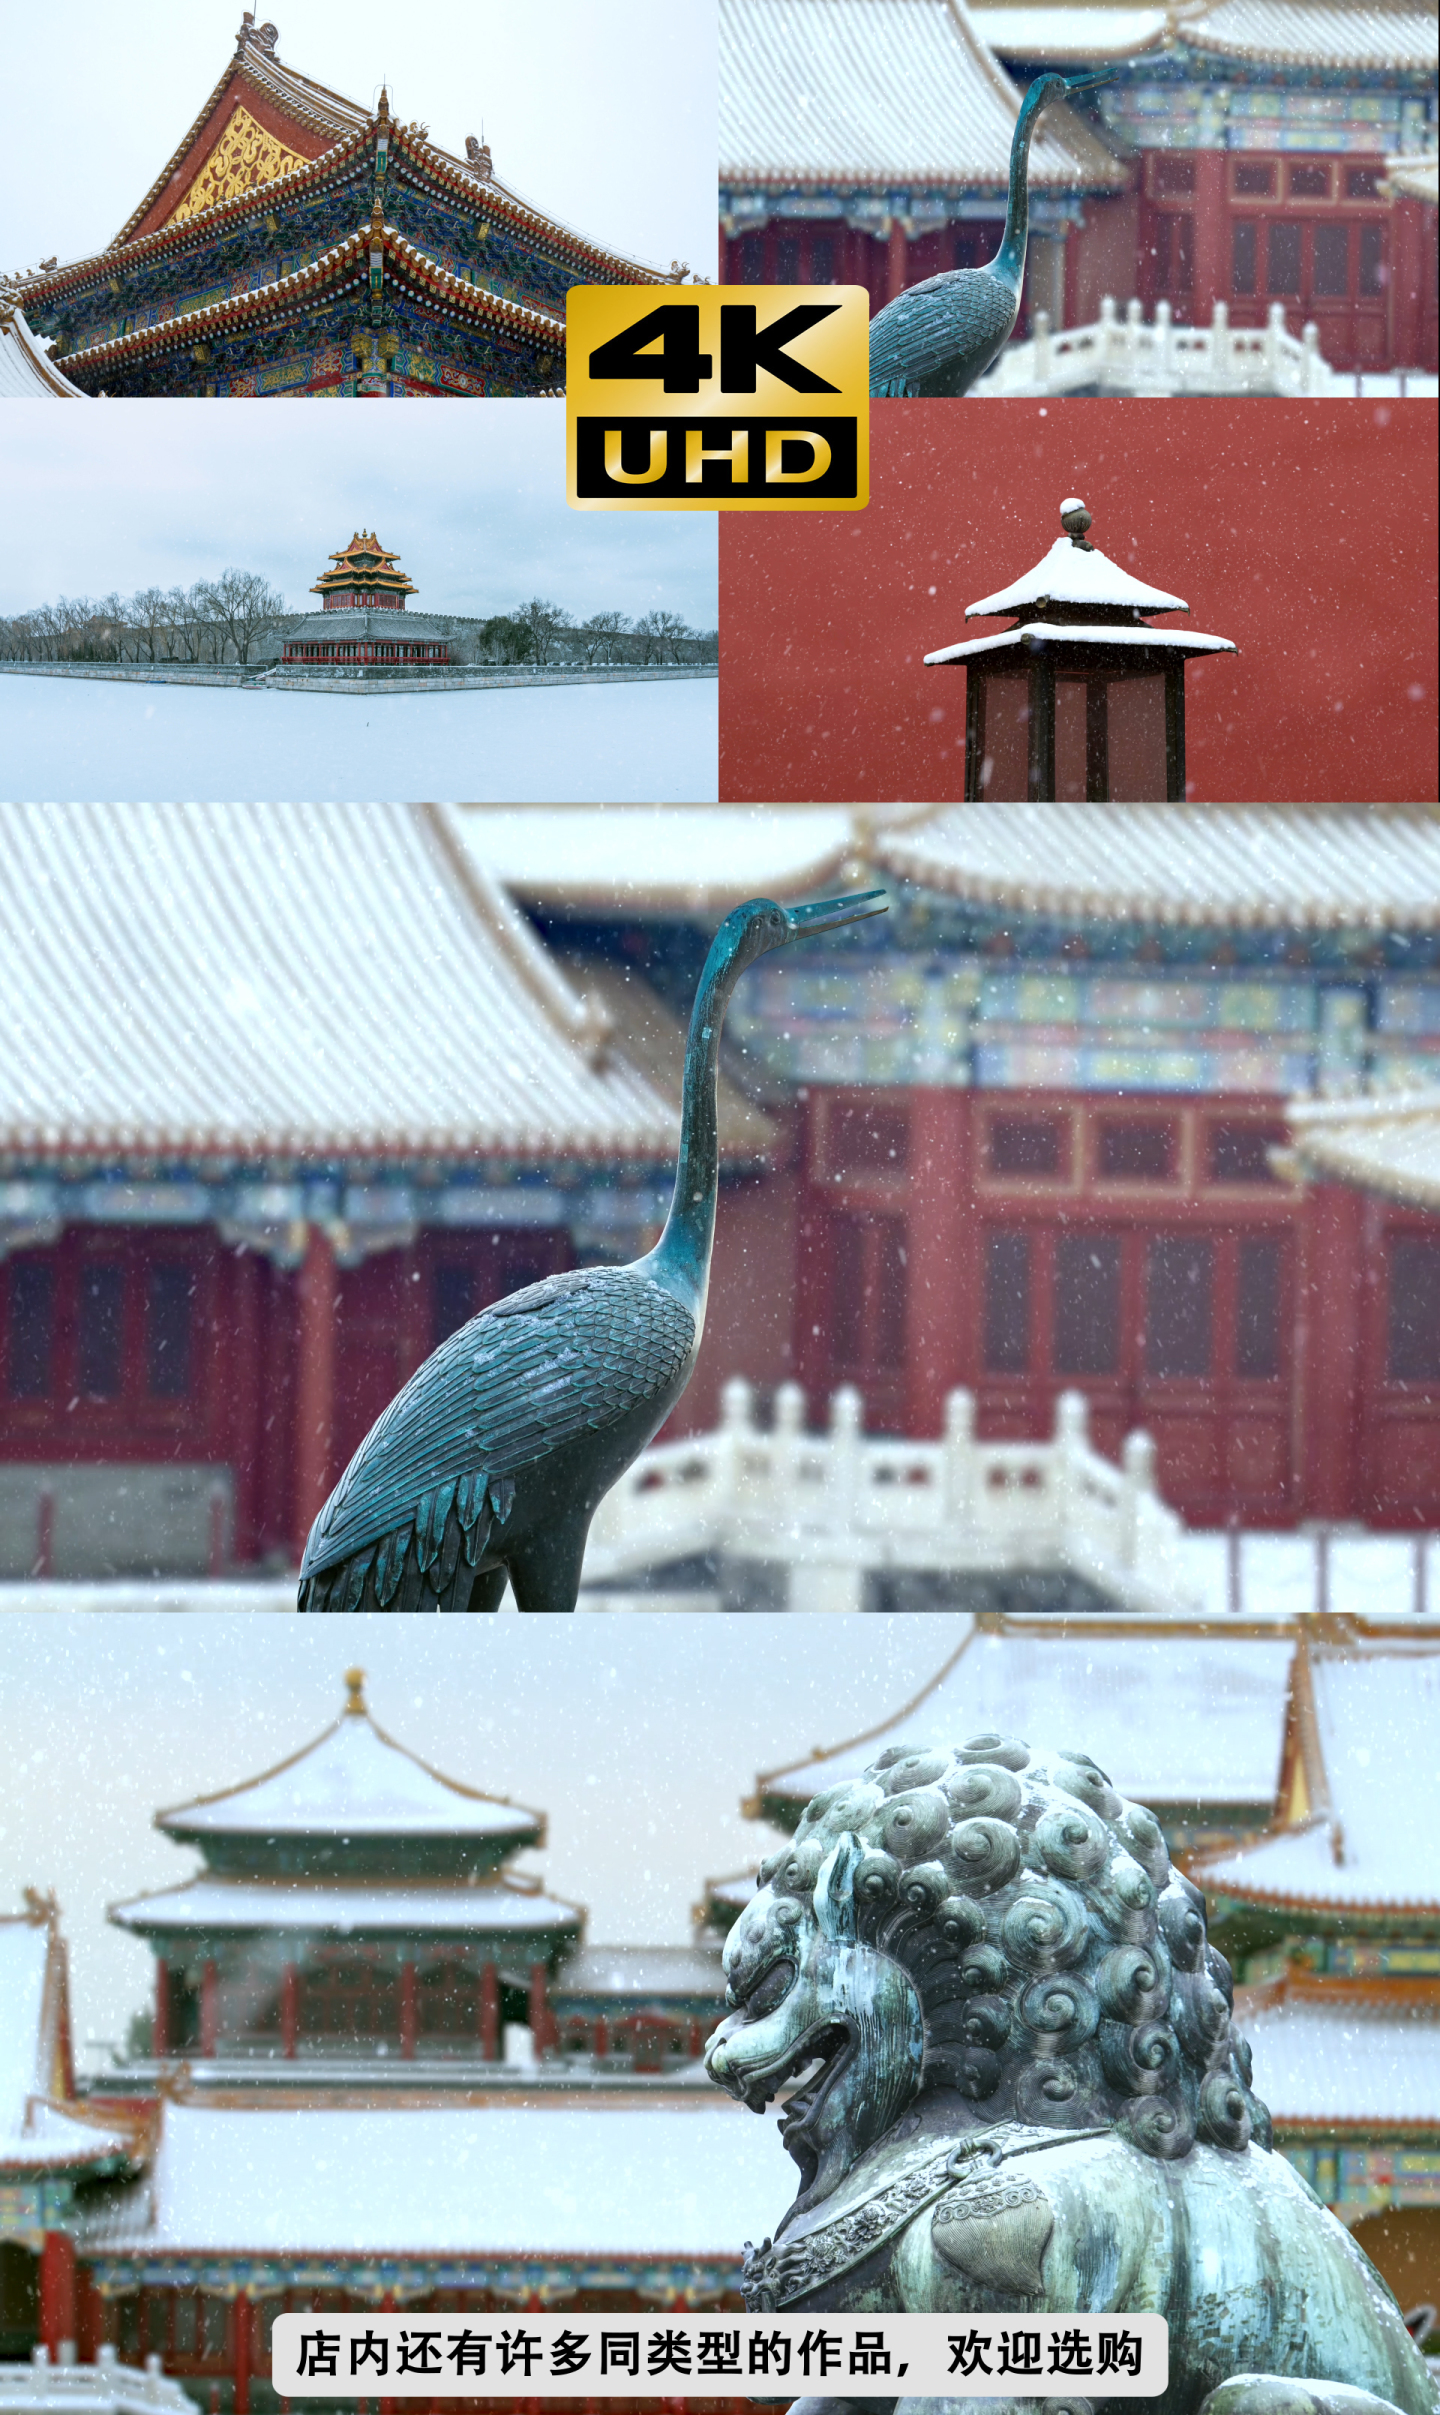 故宫雪景、冬天北京下雪